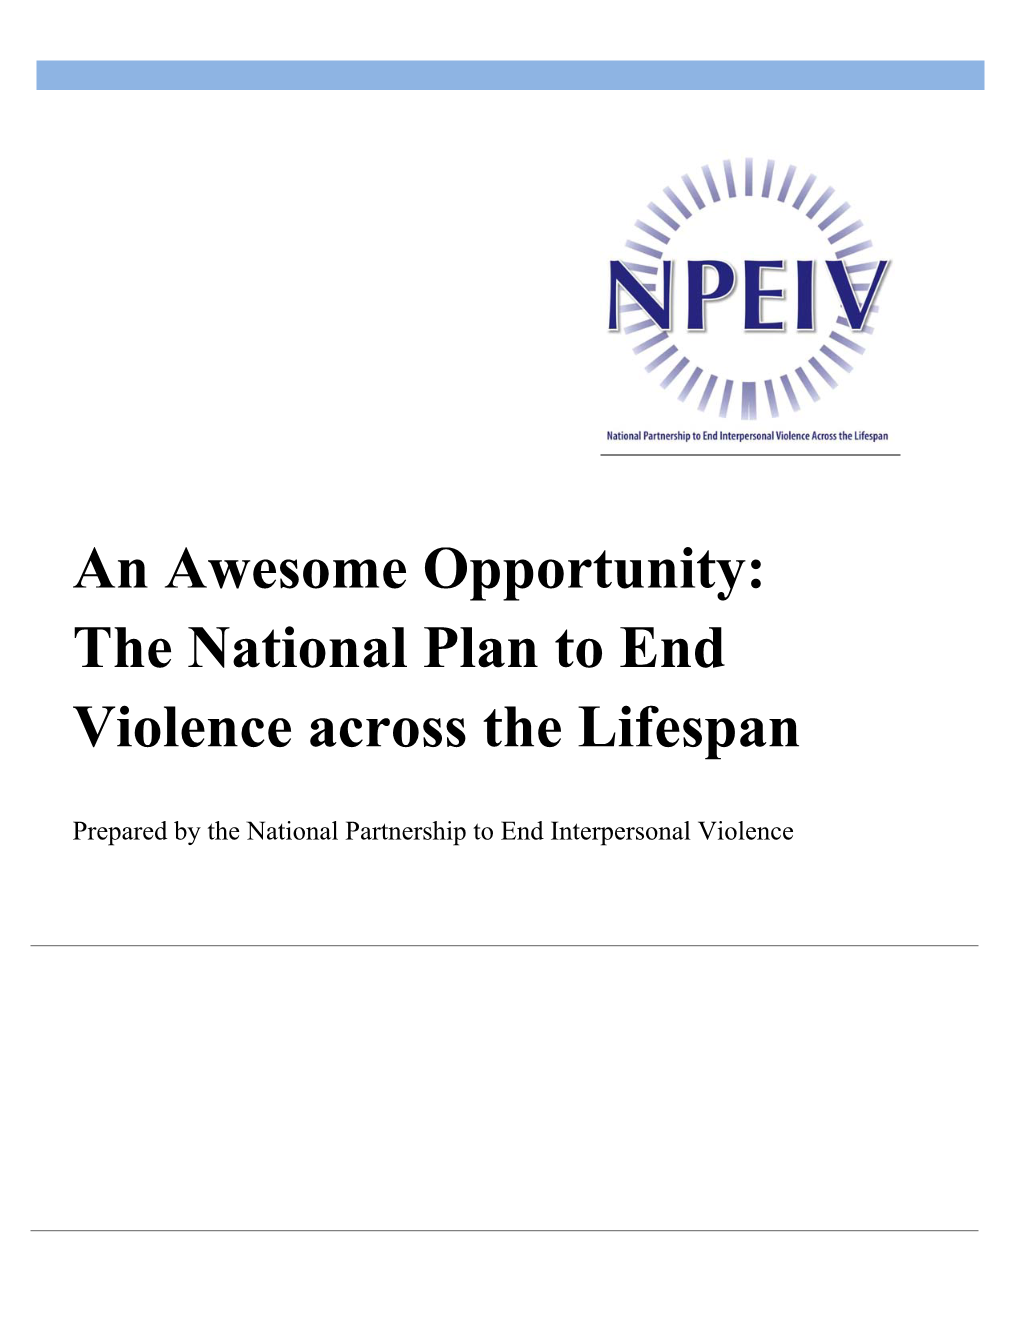 The National Plan to End Violence Across the Lifespan